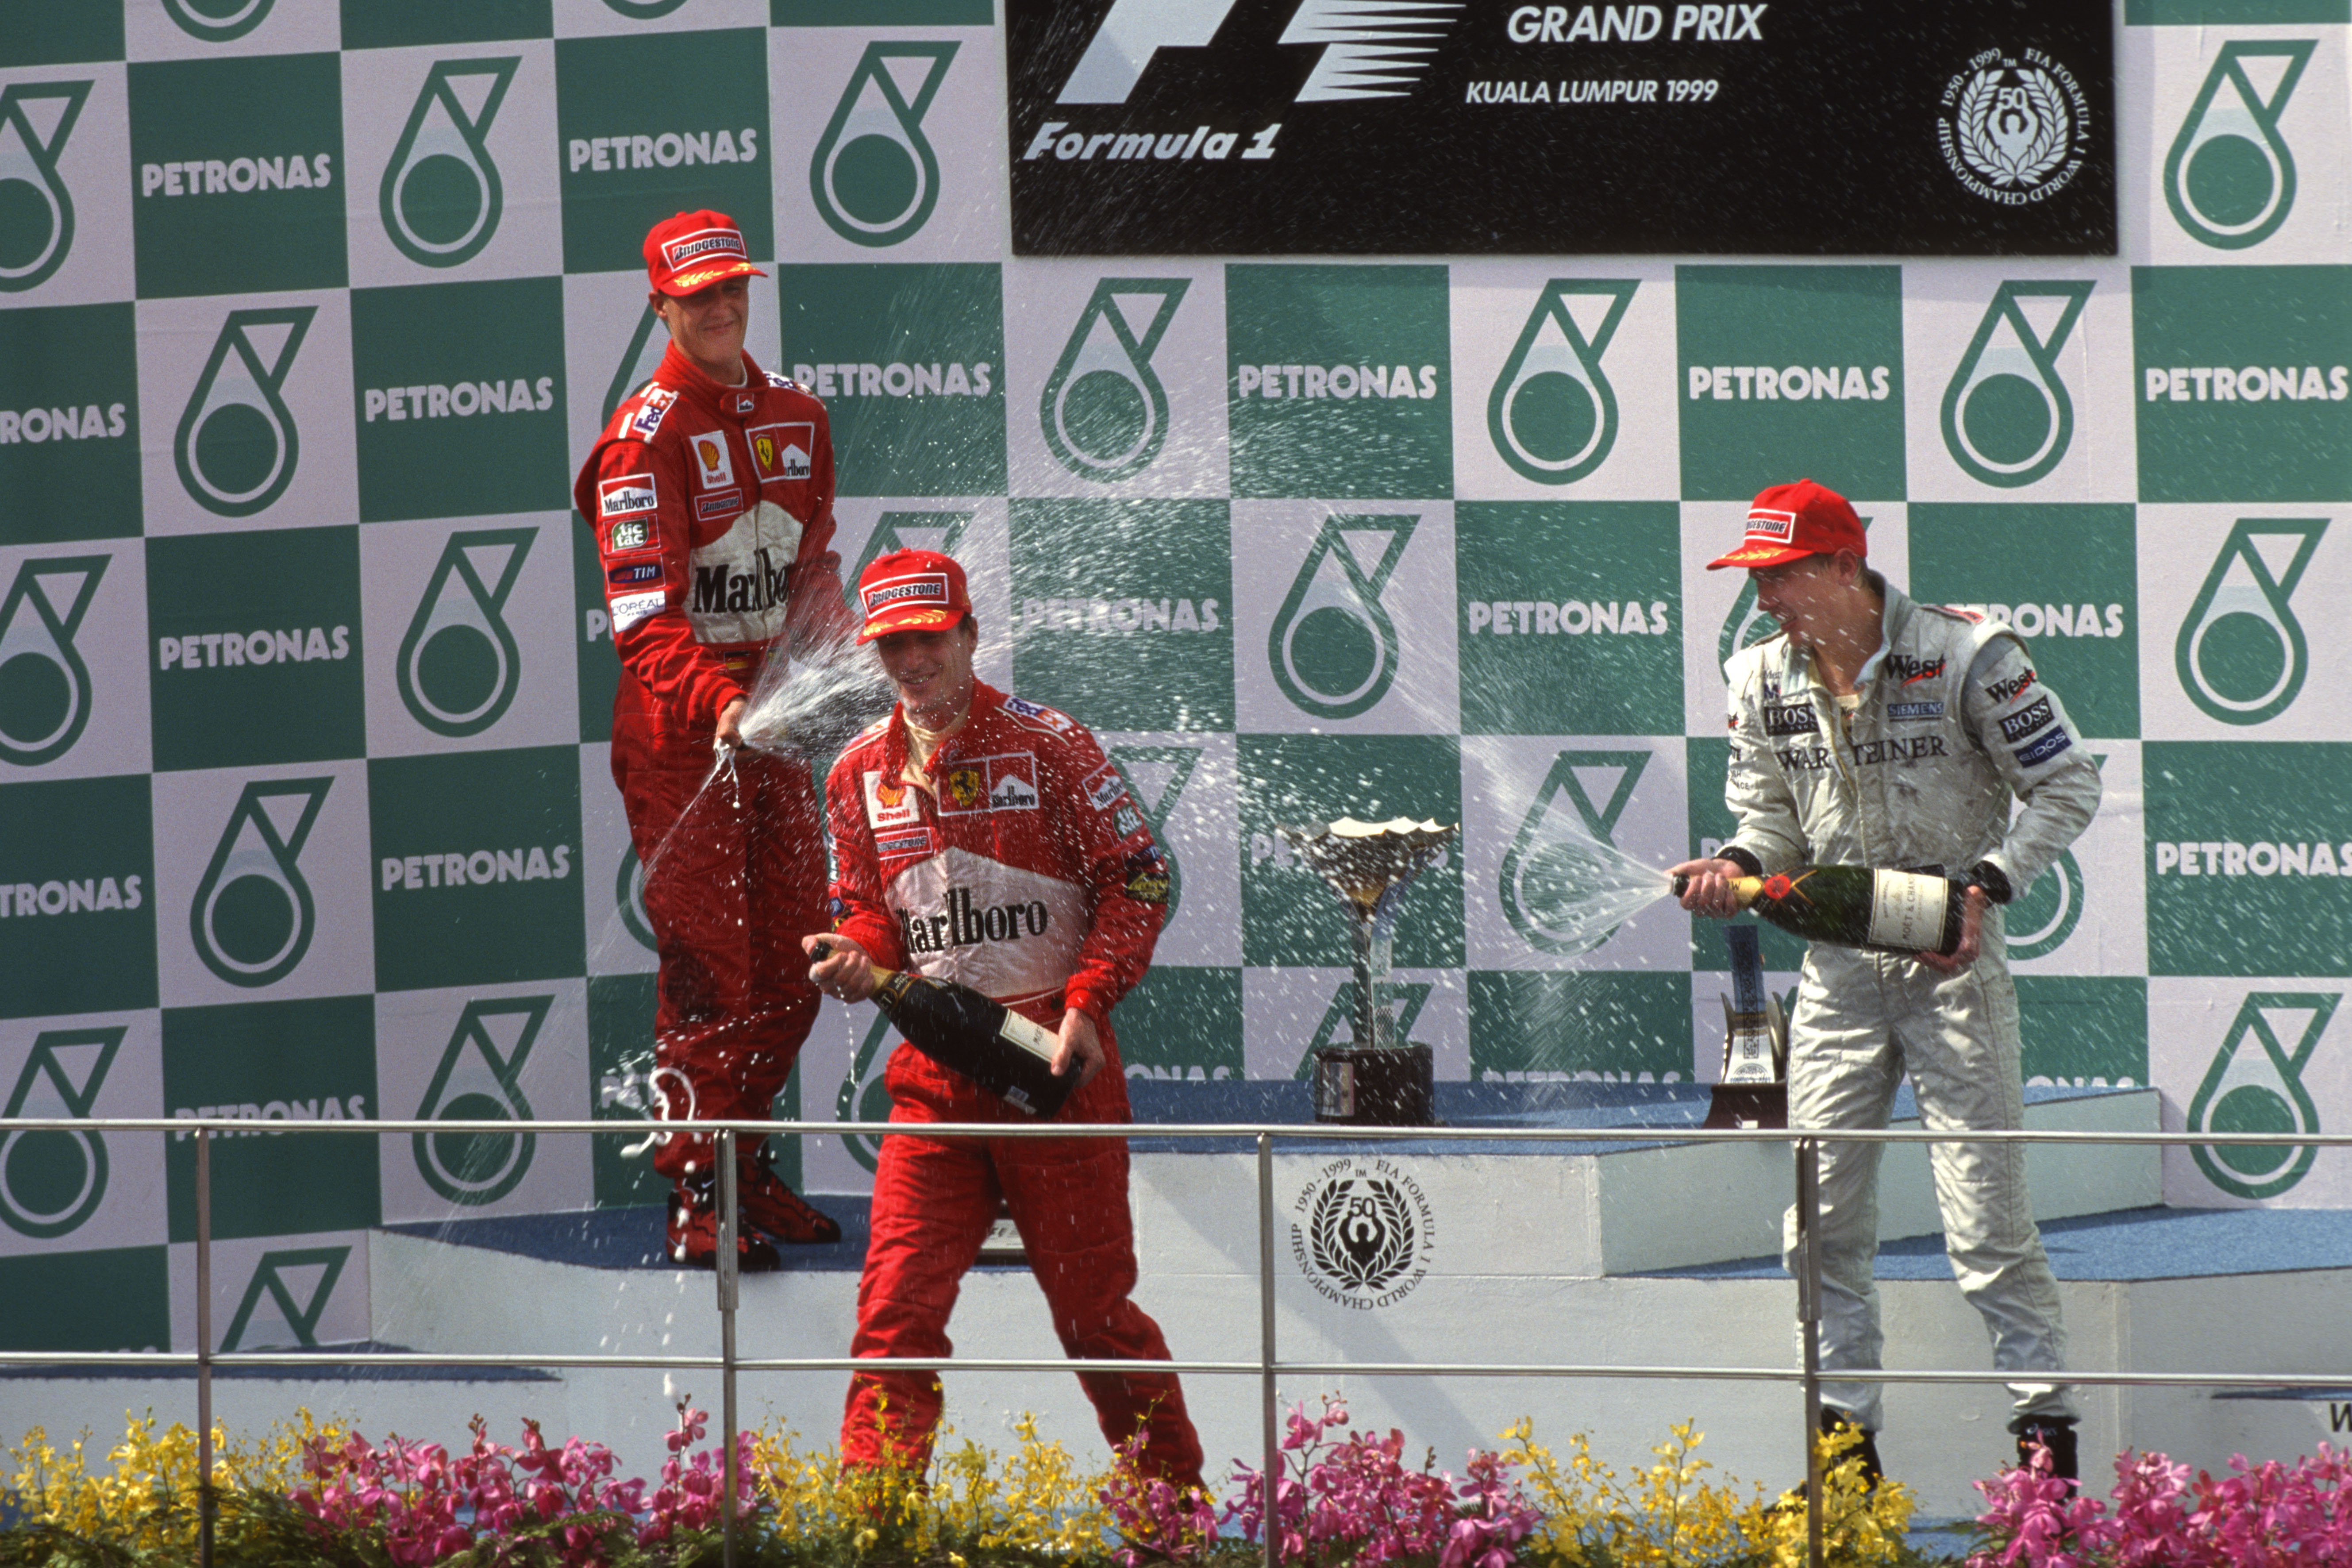 1999 Malaysian GP podium Eddie Irvine Michael Schumacher Mika Hakkinen F1 Ferrari McLaren Sepang